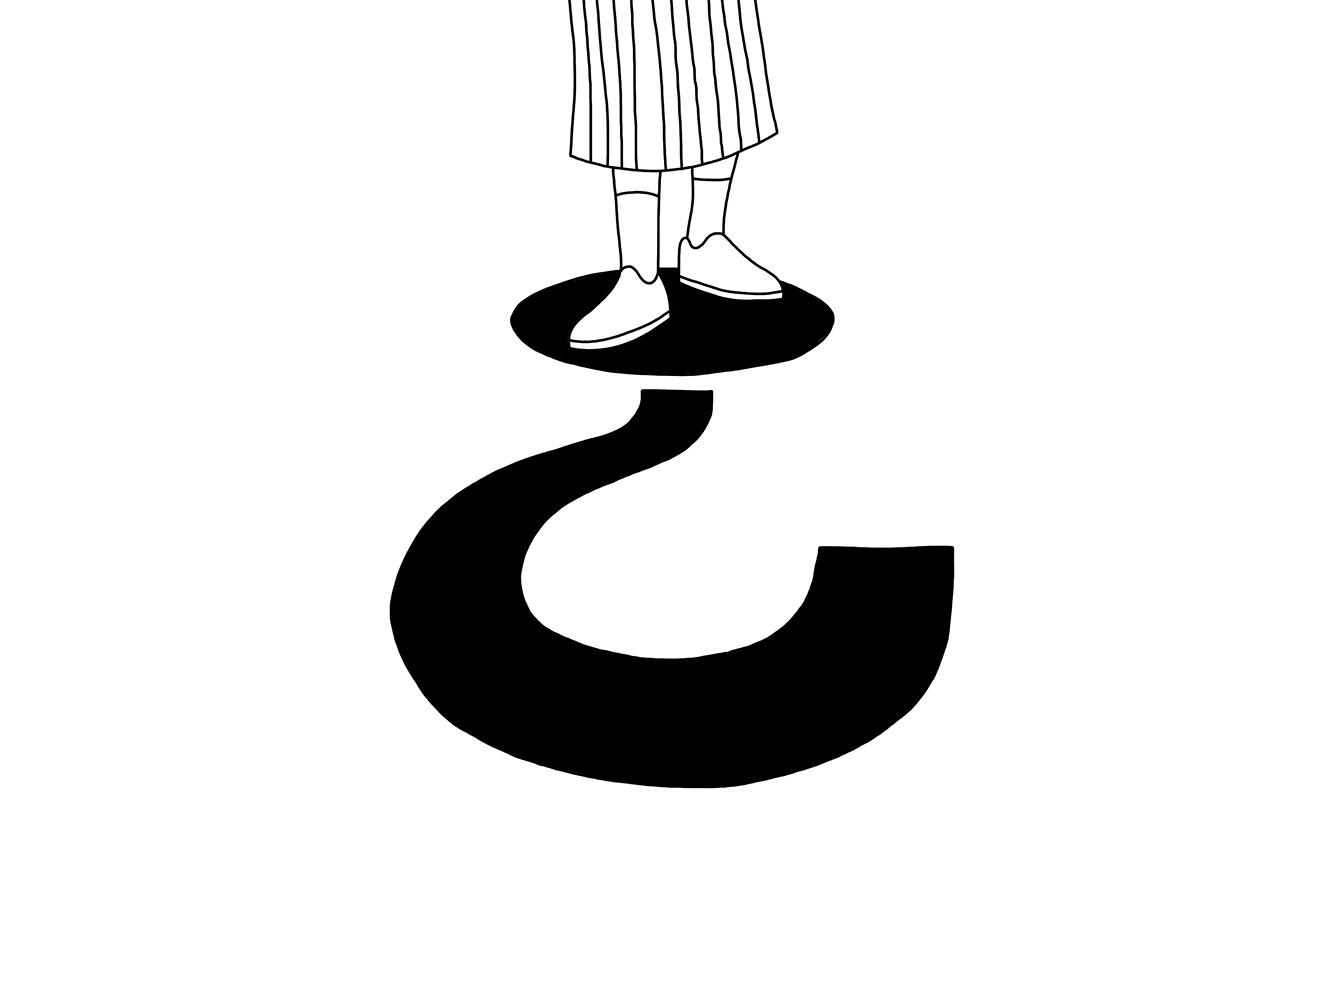 Schwarz-weiße Illustration einer Person, die auf dem Punkt eines großen Fragezeichens steht.